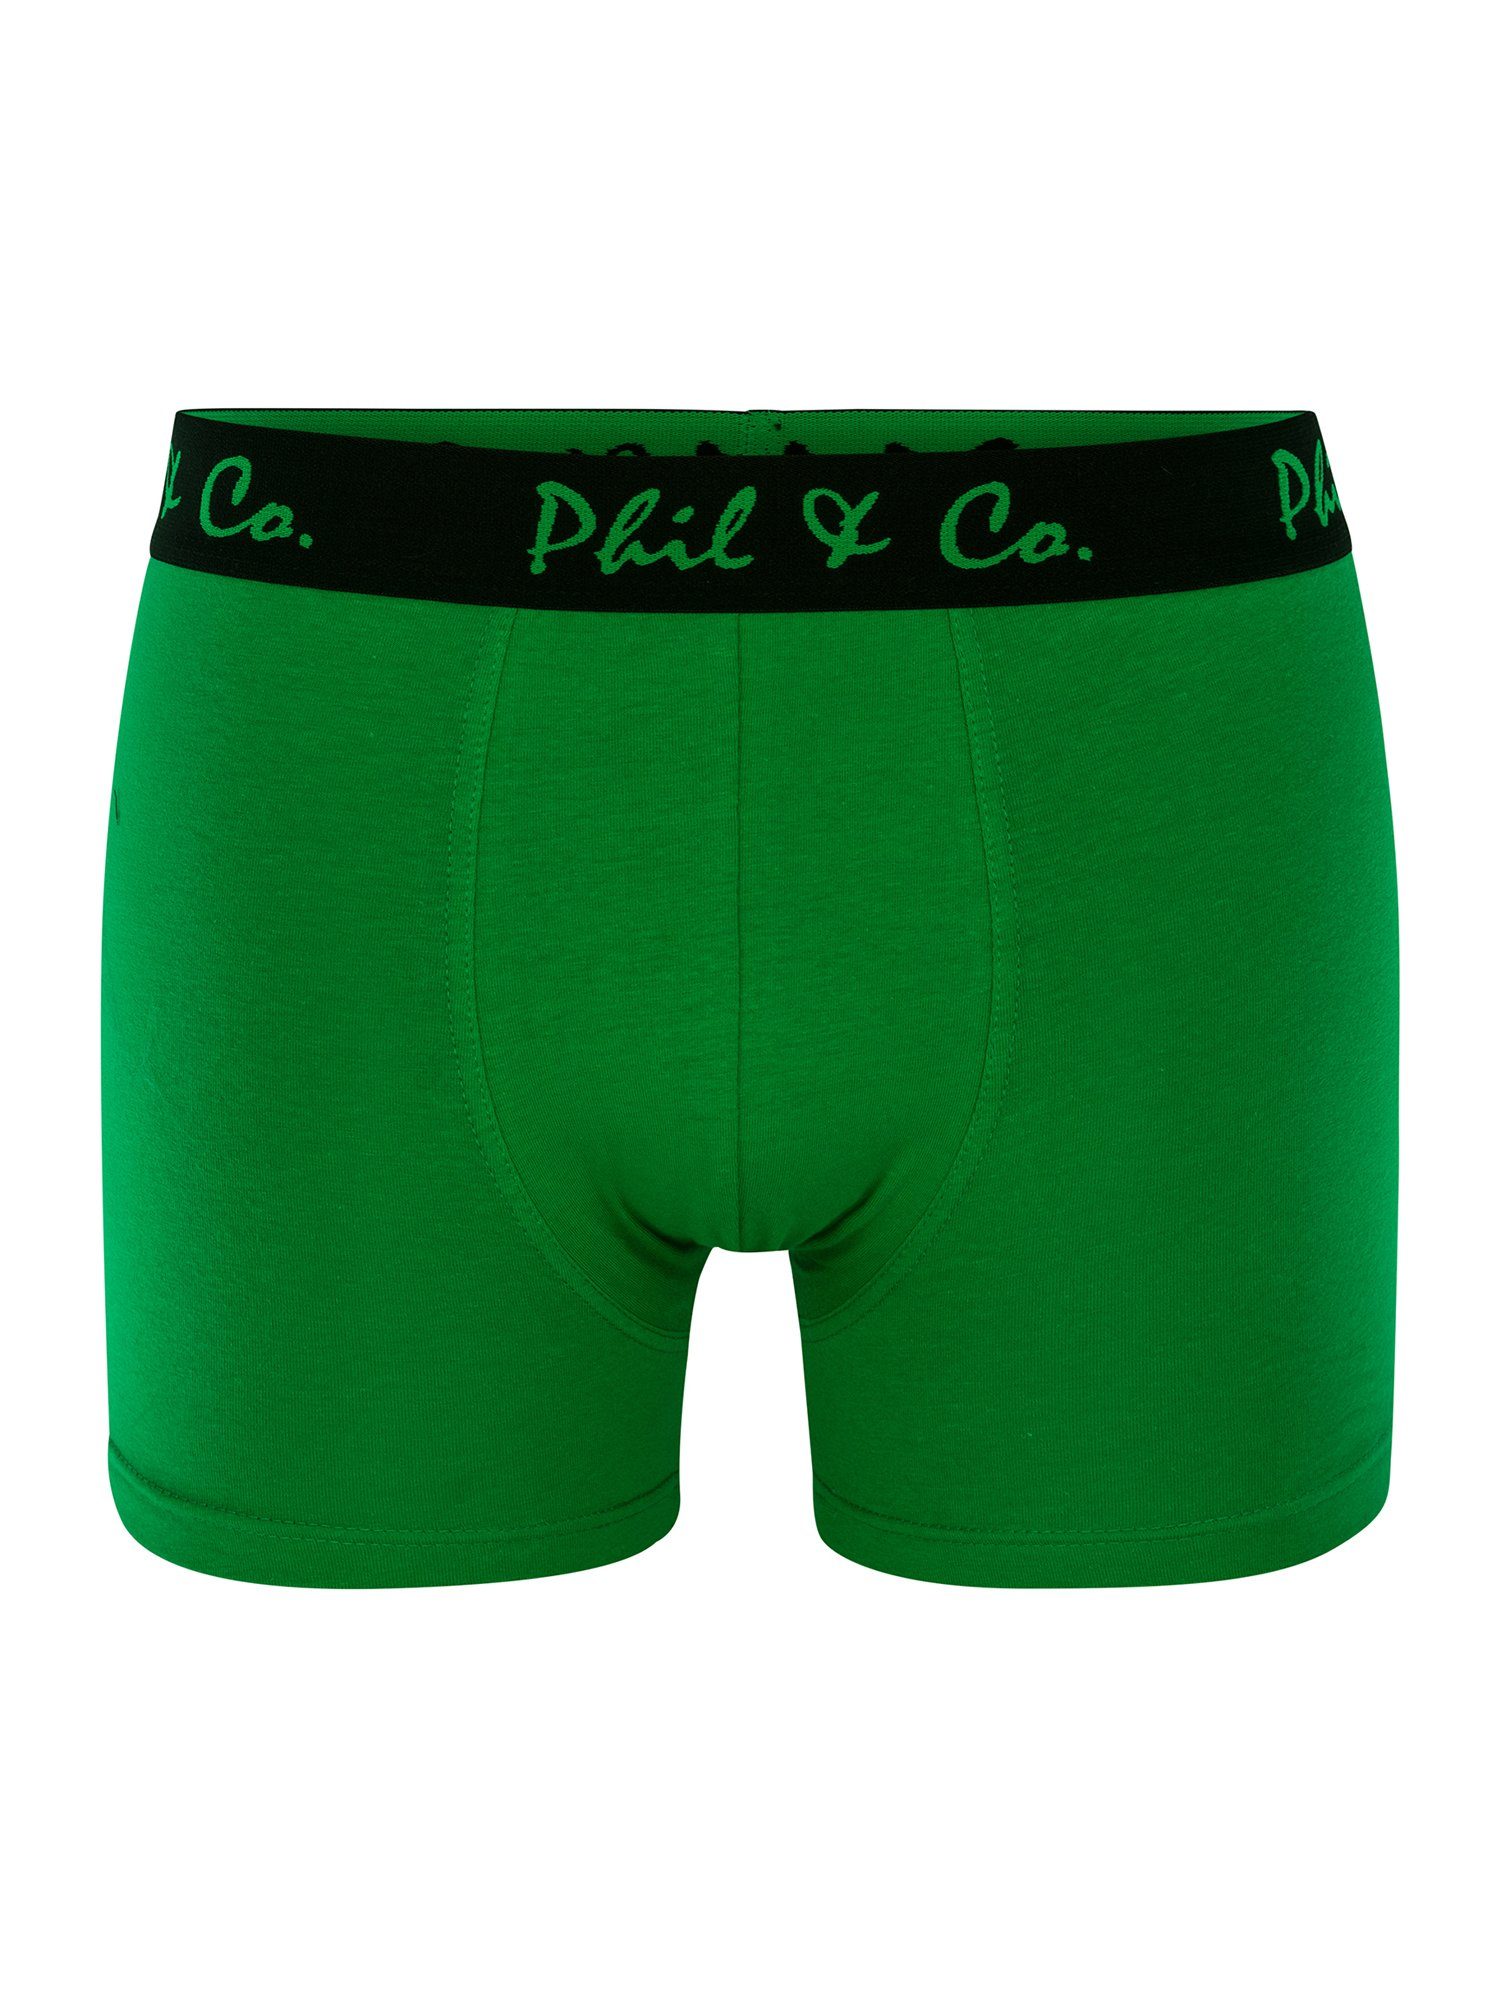 Phil & Co. Retro Pants Jersey (4-St) grün-anthrazit